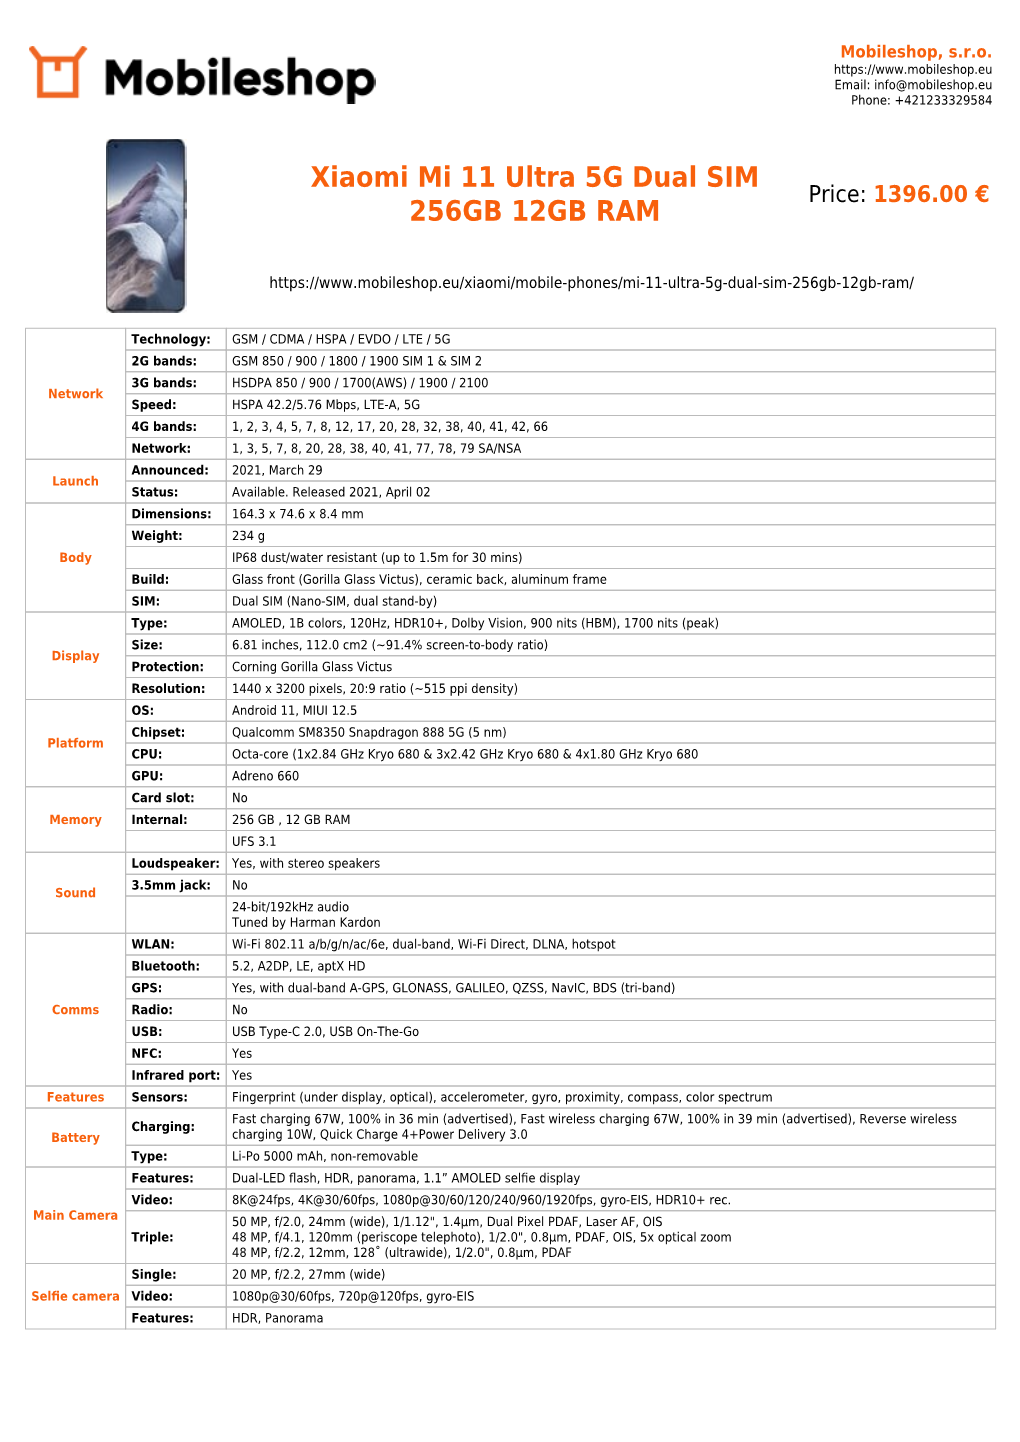 Xiaomi Mi 11 Ultra 5G Dual SIM 256GB 12GB